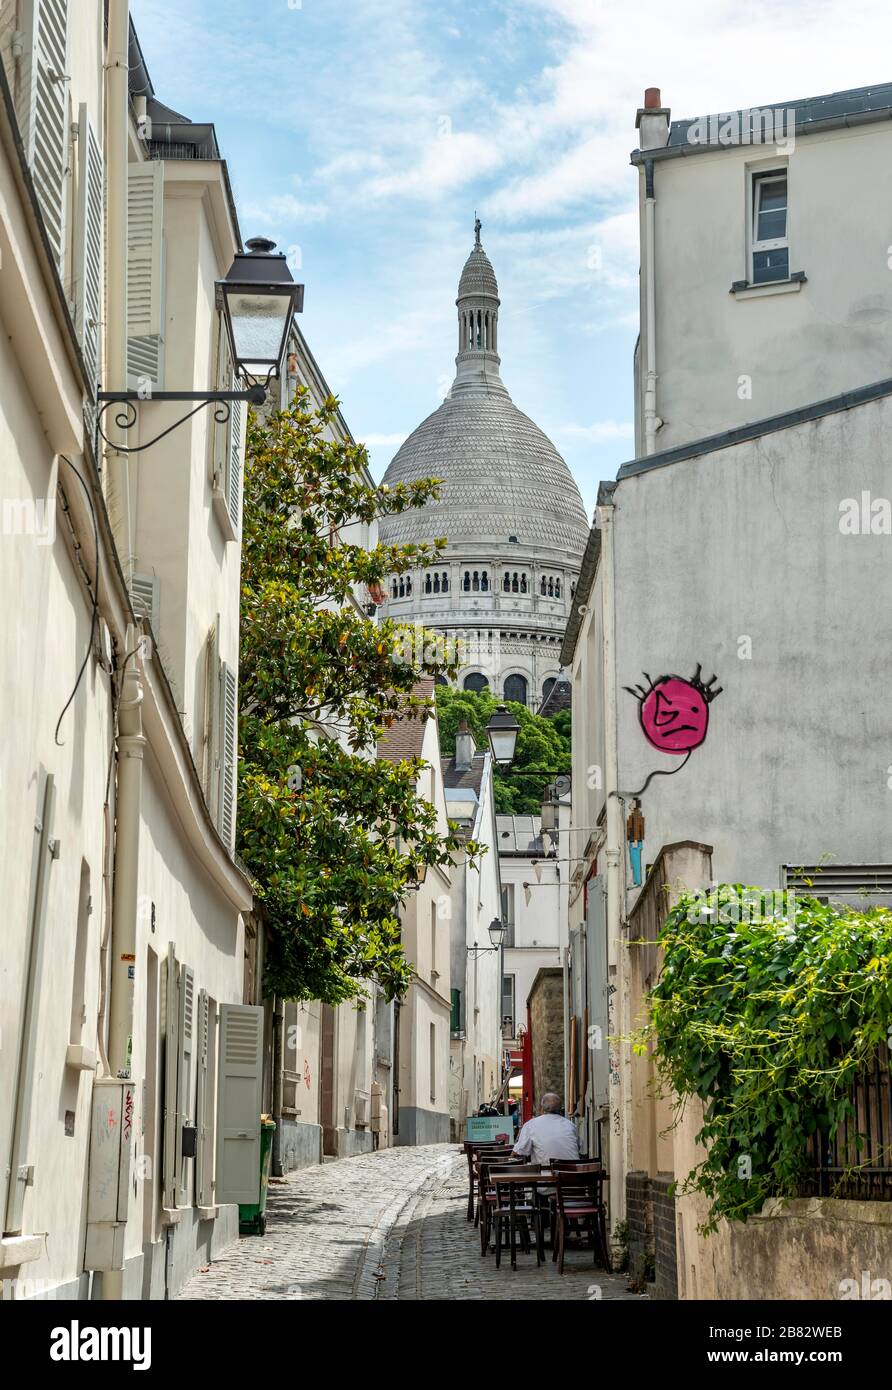 Petite allée à Montmartre avec vue sur le dôme de la Basilique Sacré-coeur, Paris, Ile-de-France, France Banque D'Images